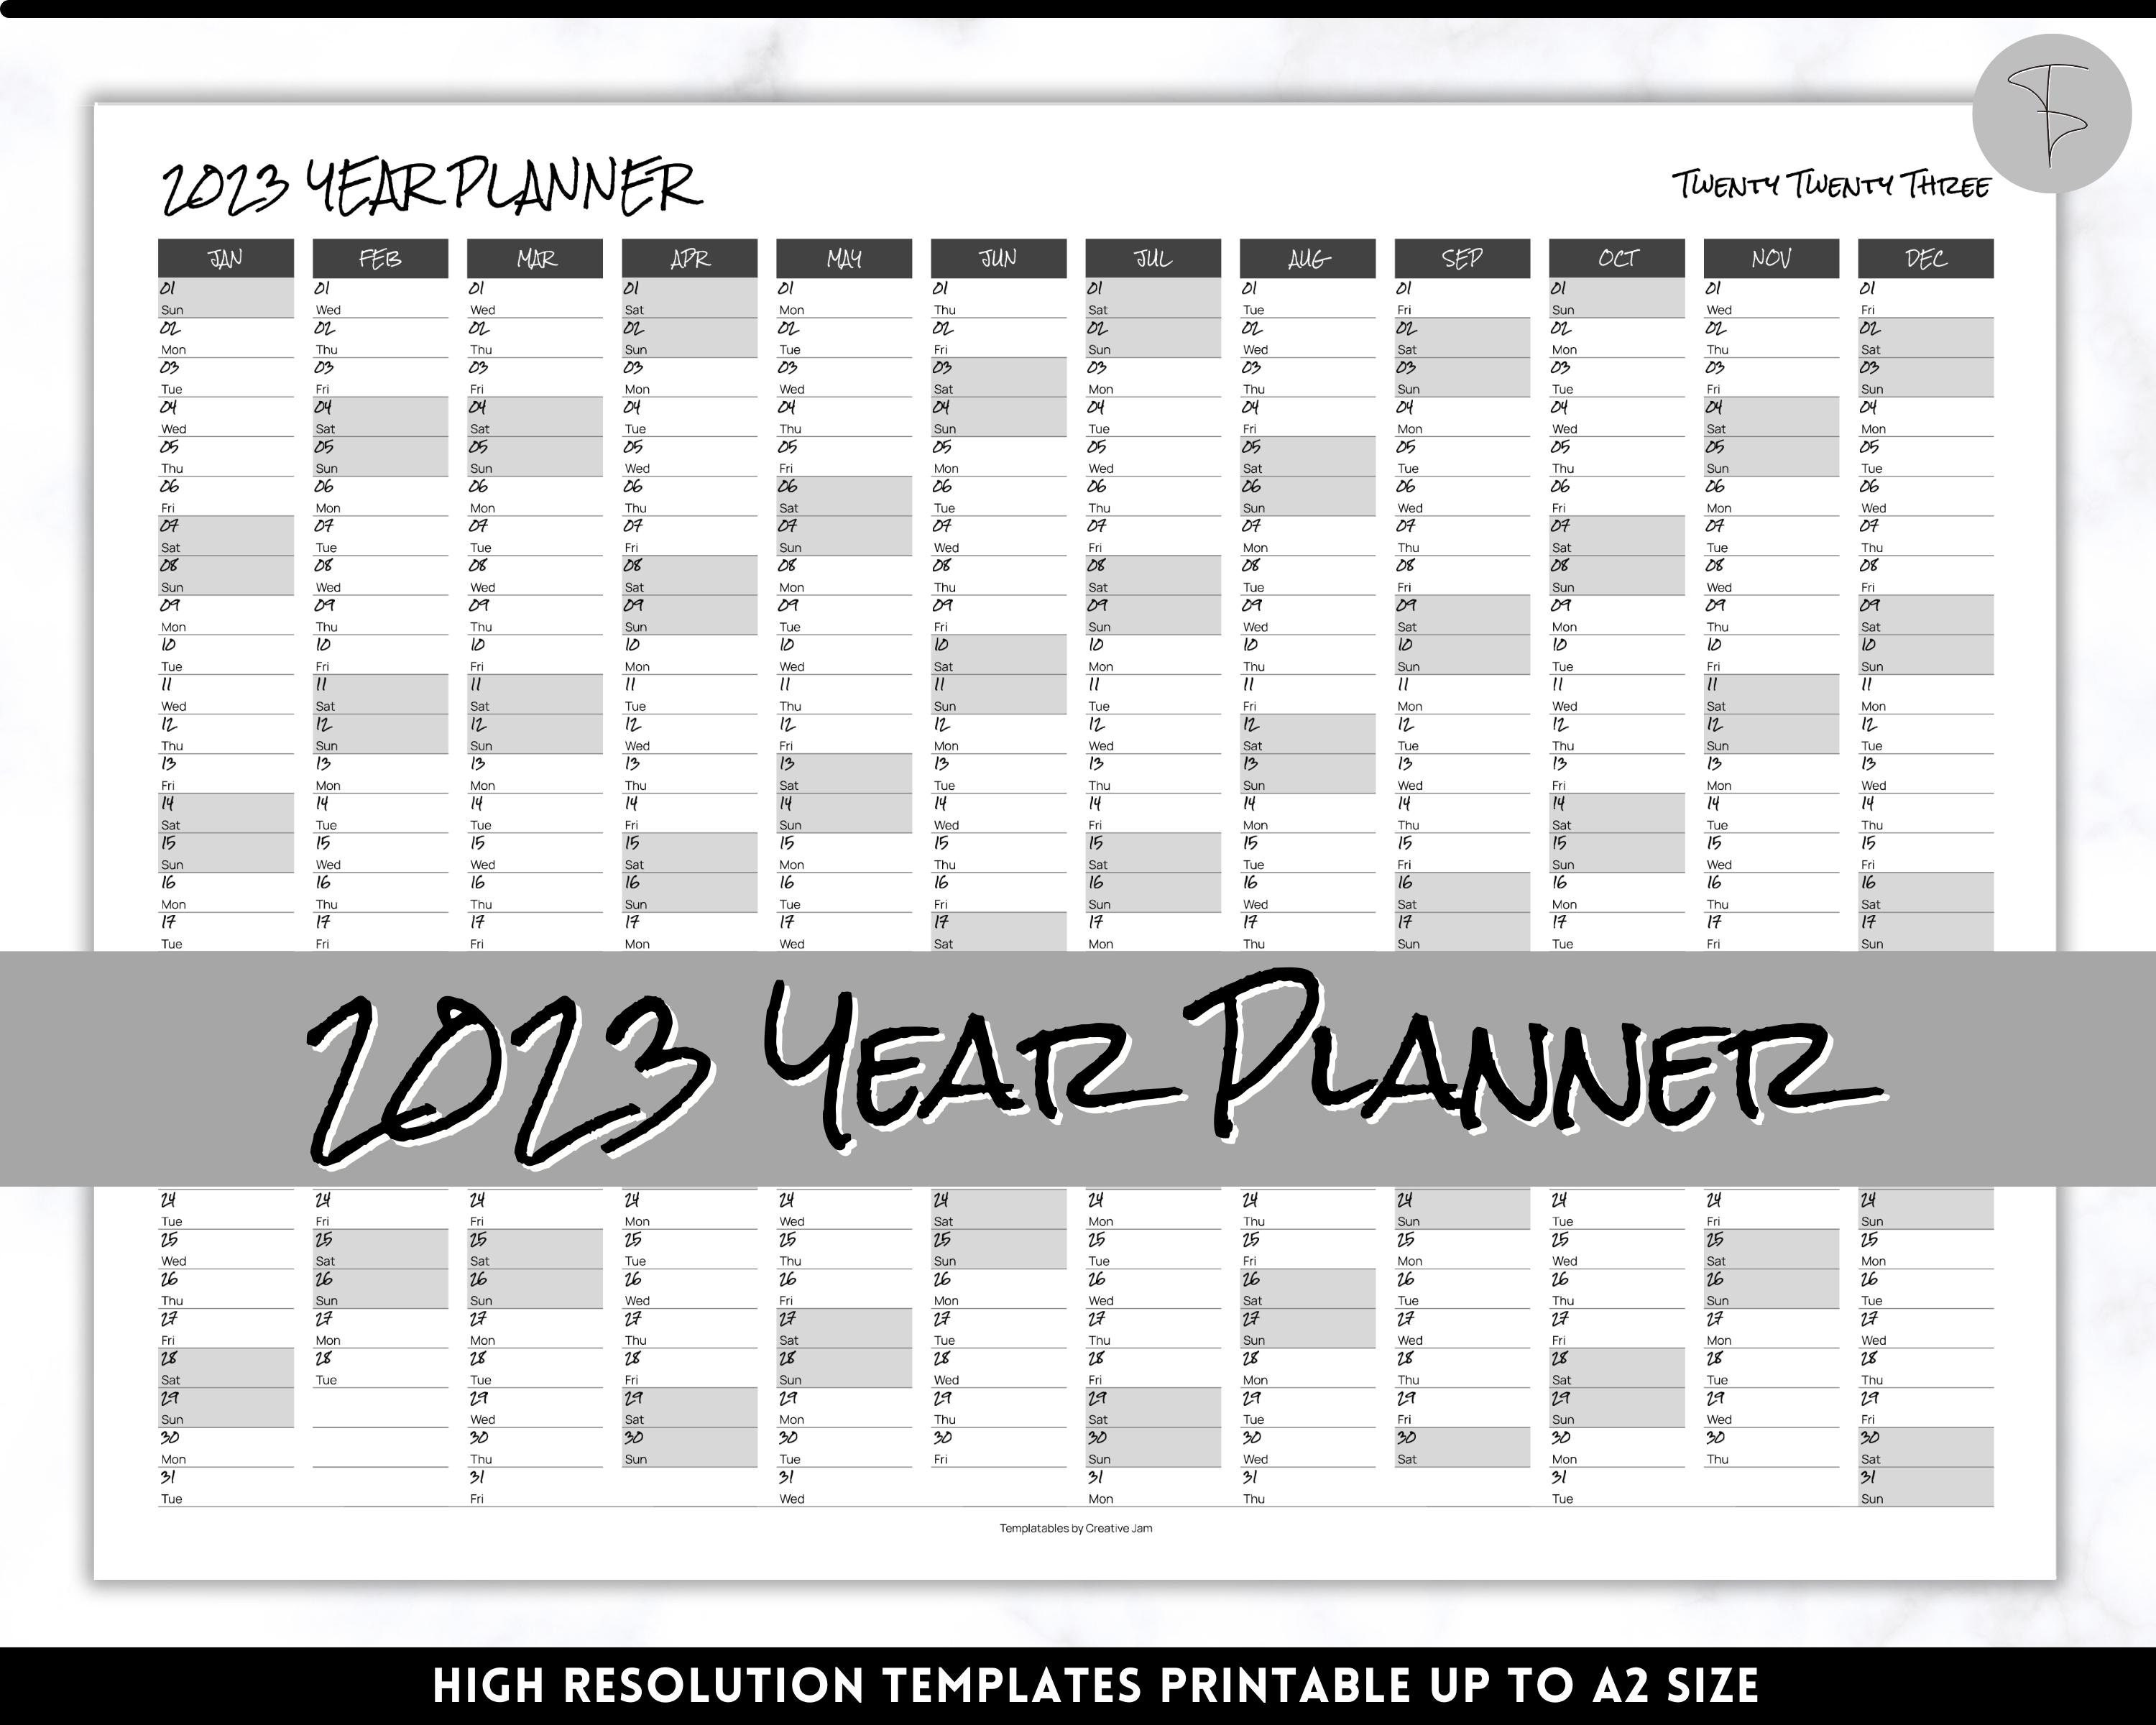 Agenda journalier 2023 A4 noir: Planificateur 1 page par jour de janvier  2023 à décembre 2023 avec heurs - Organiseur professionnel - Français